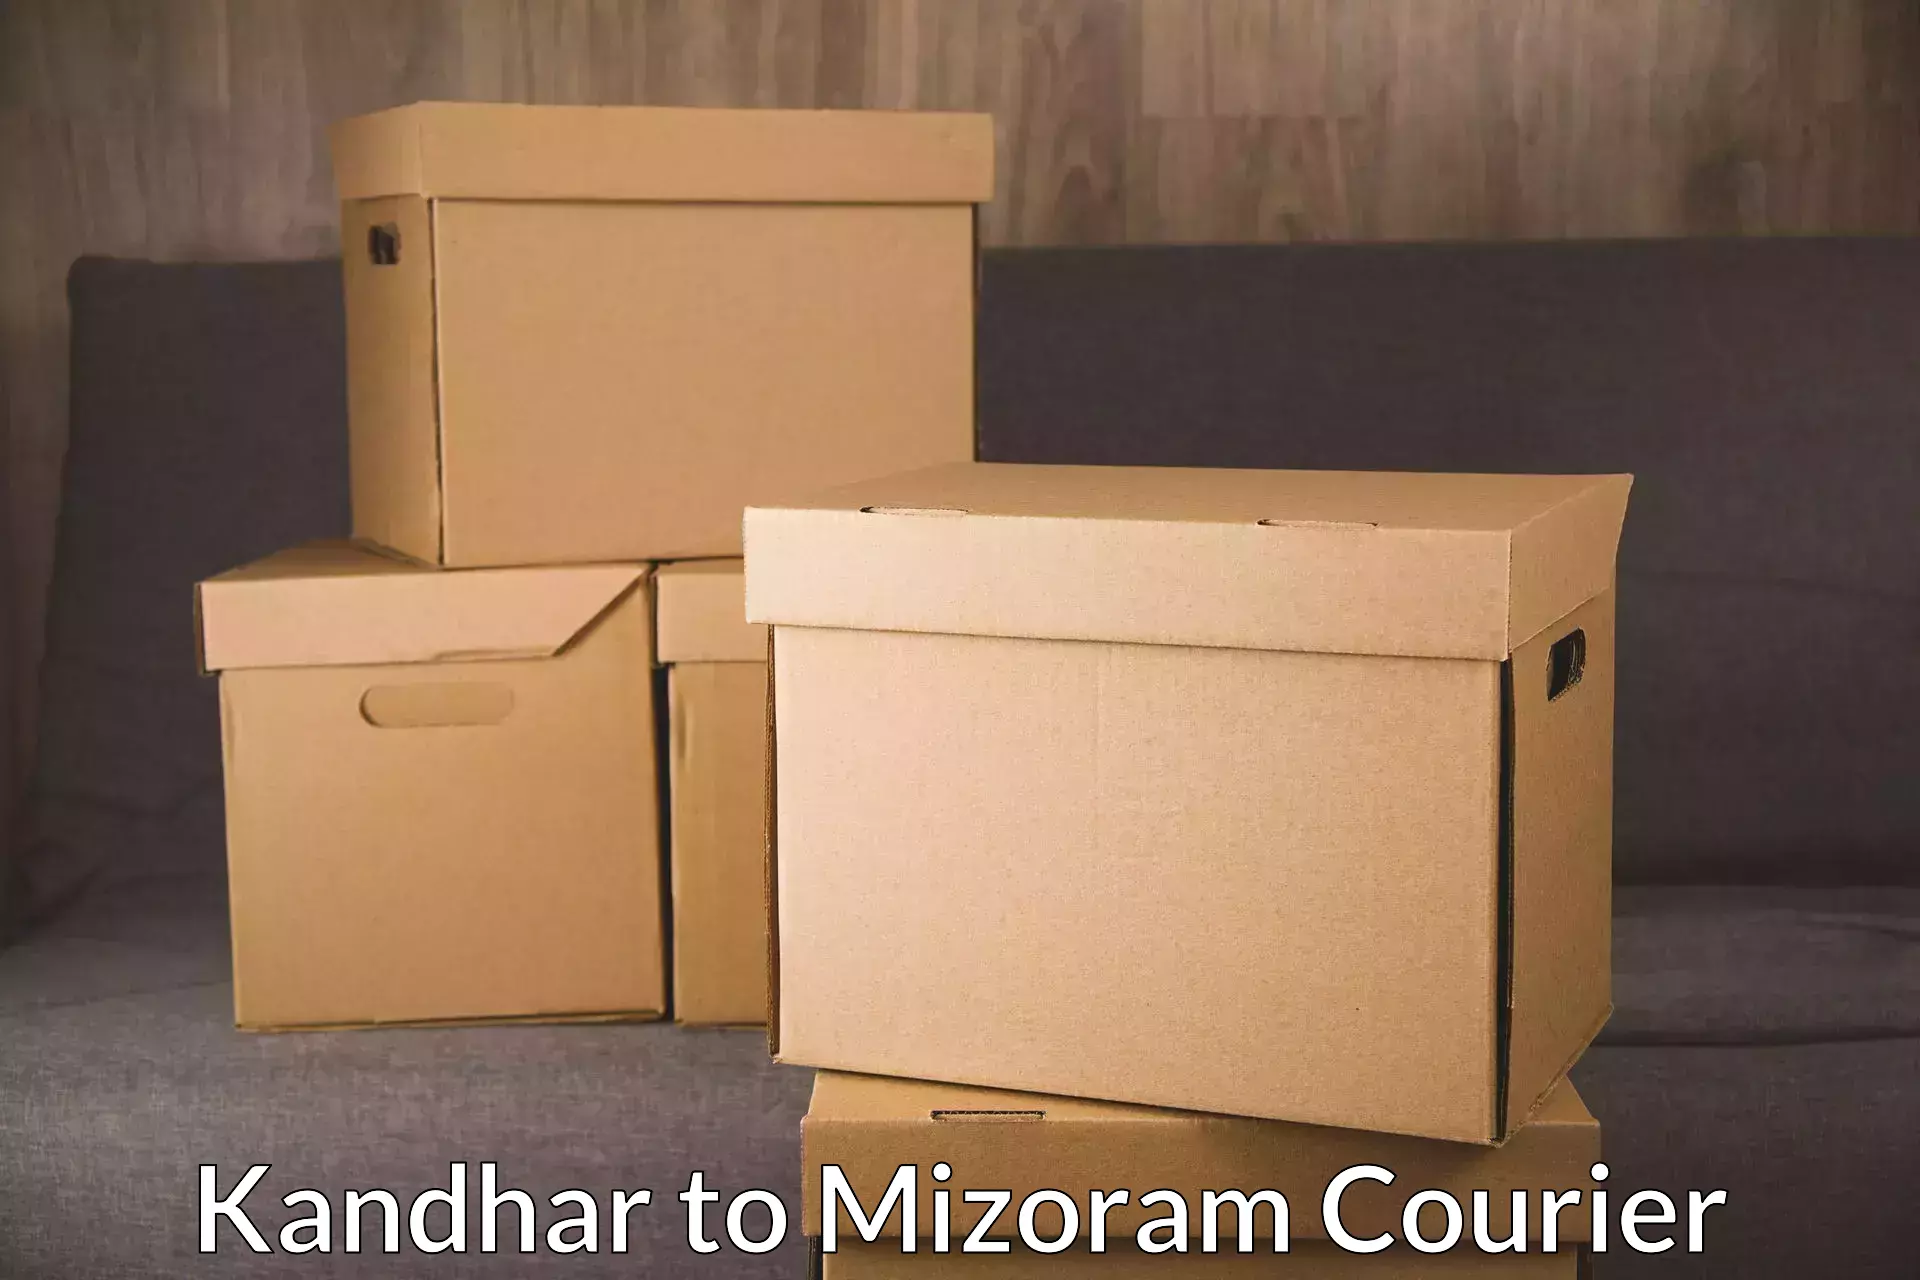 Global shipping networks Kandhar to Mizoram